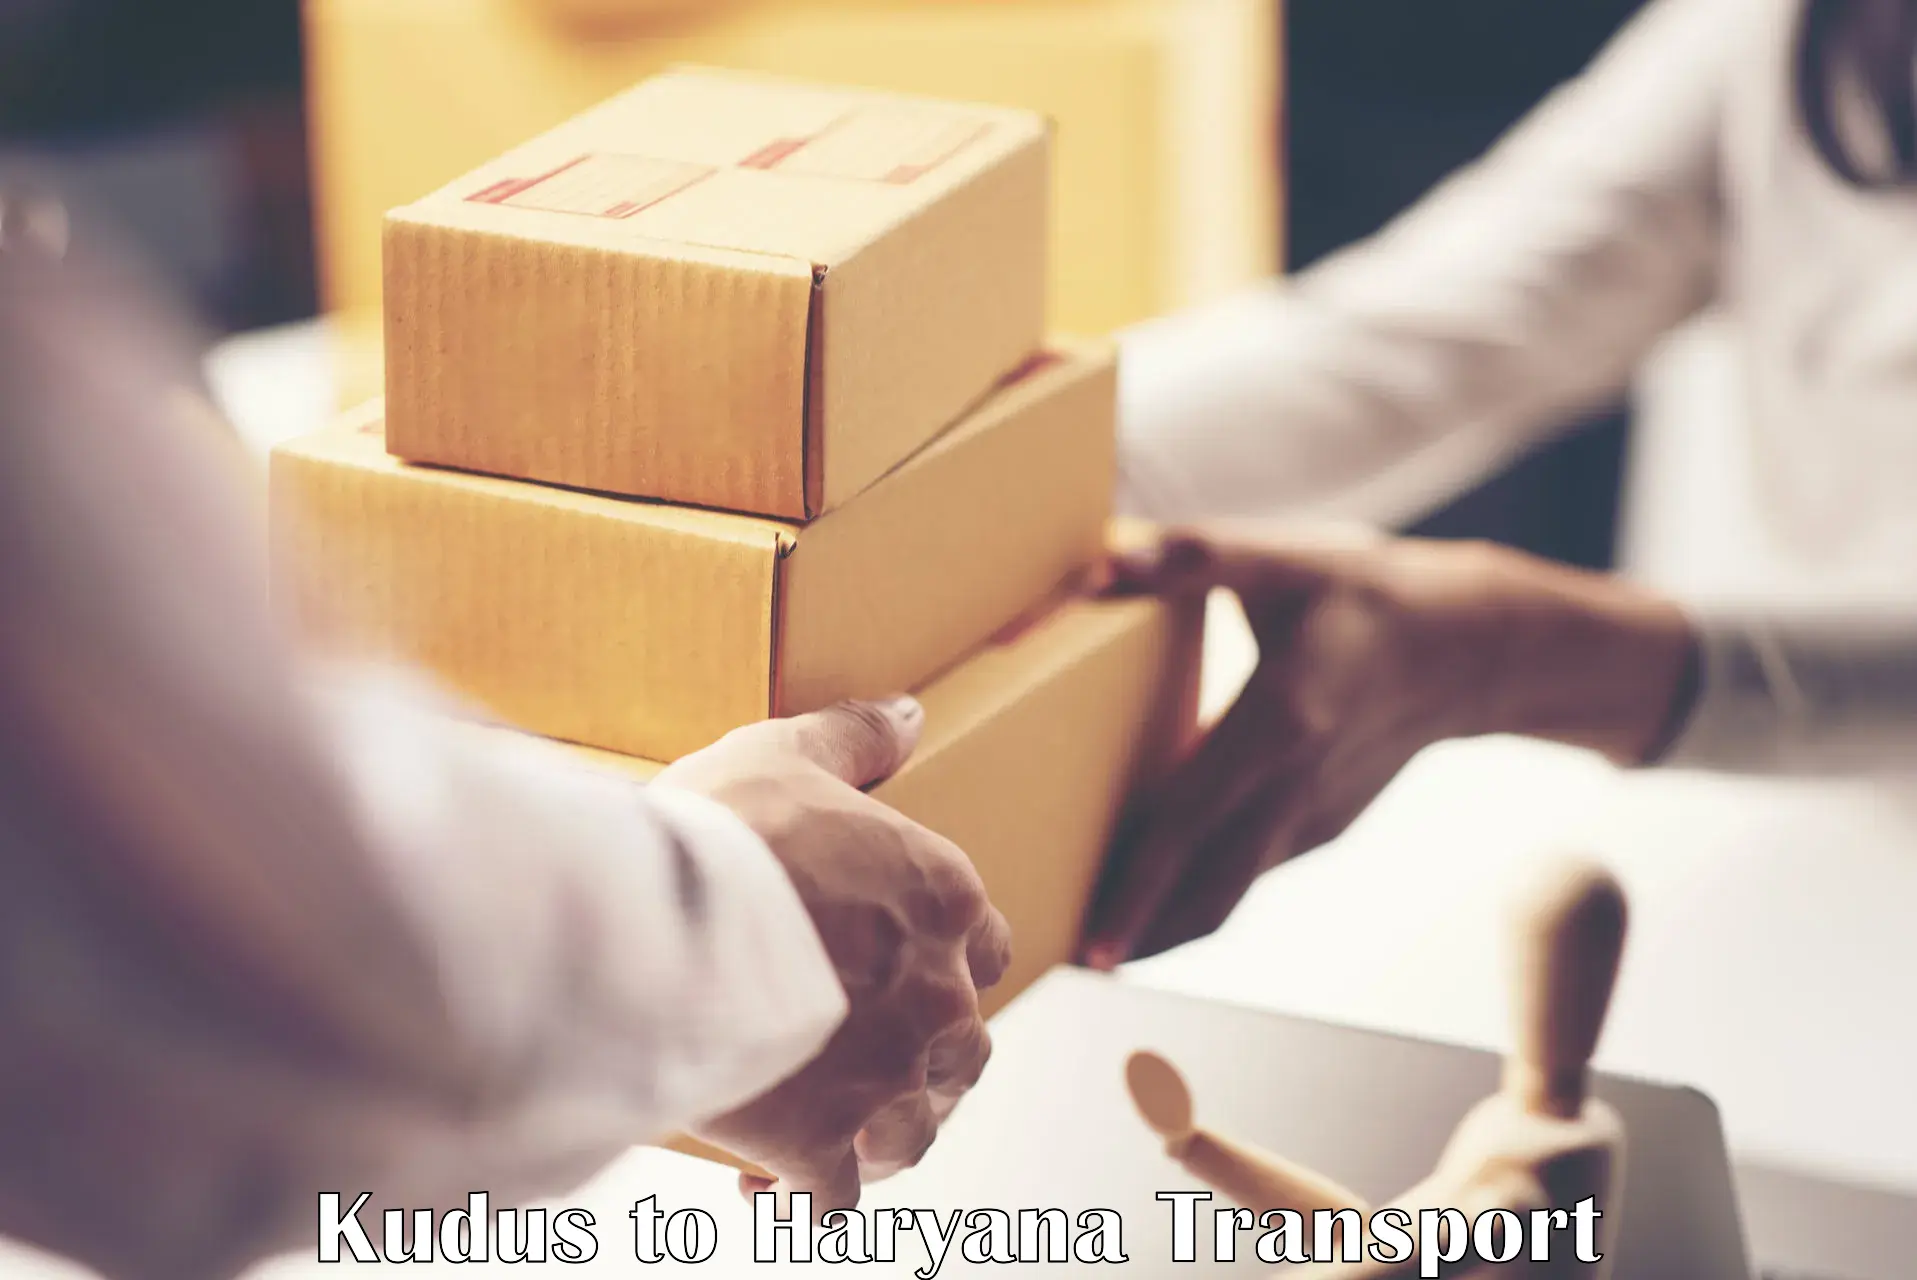 Online transport booking Kudus to Odhan